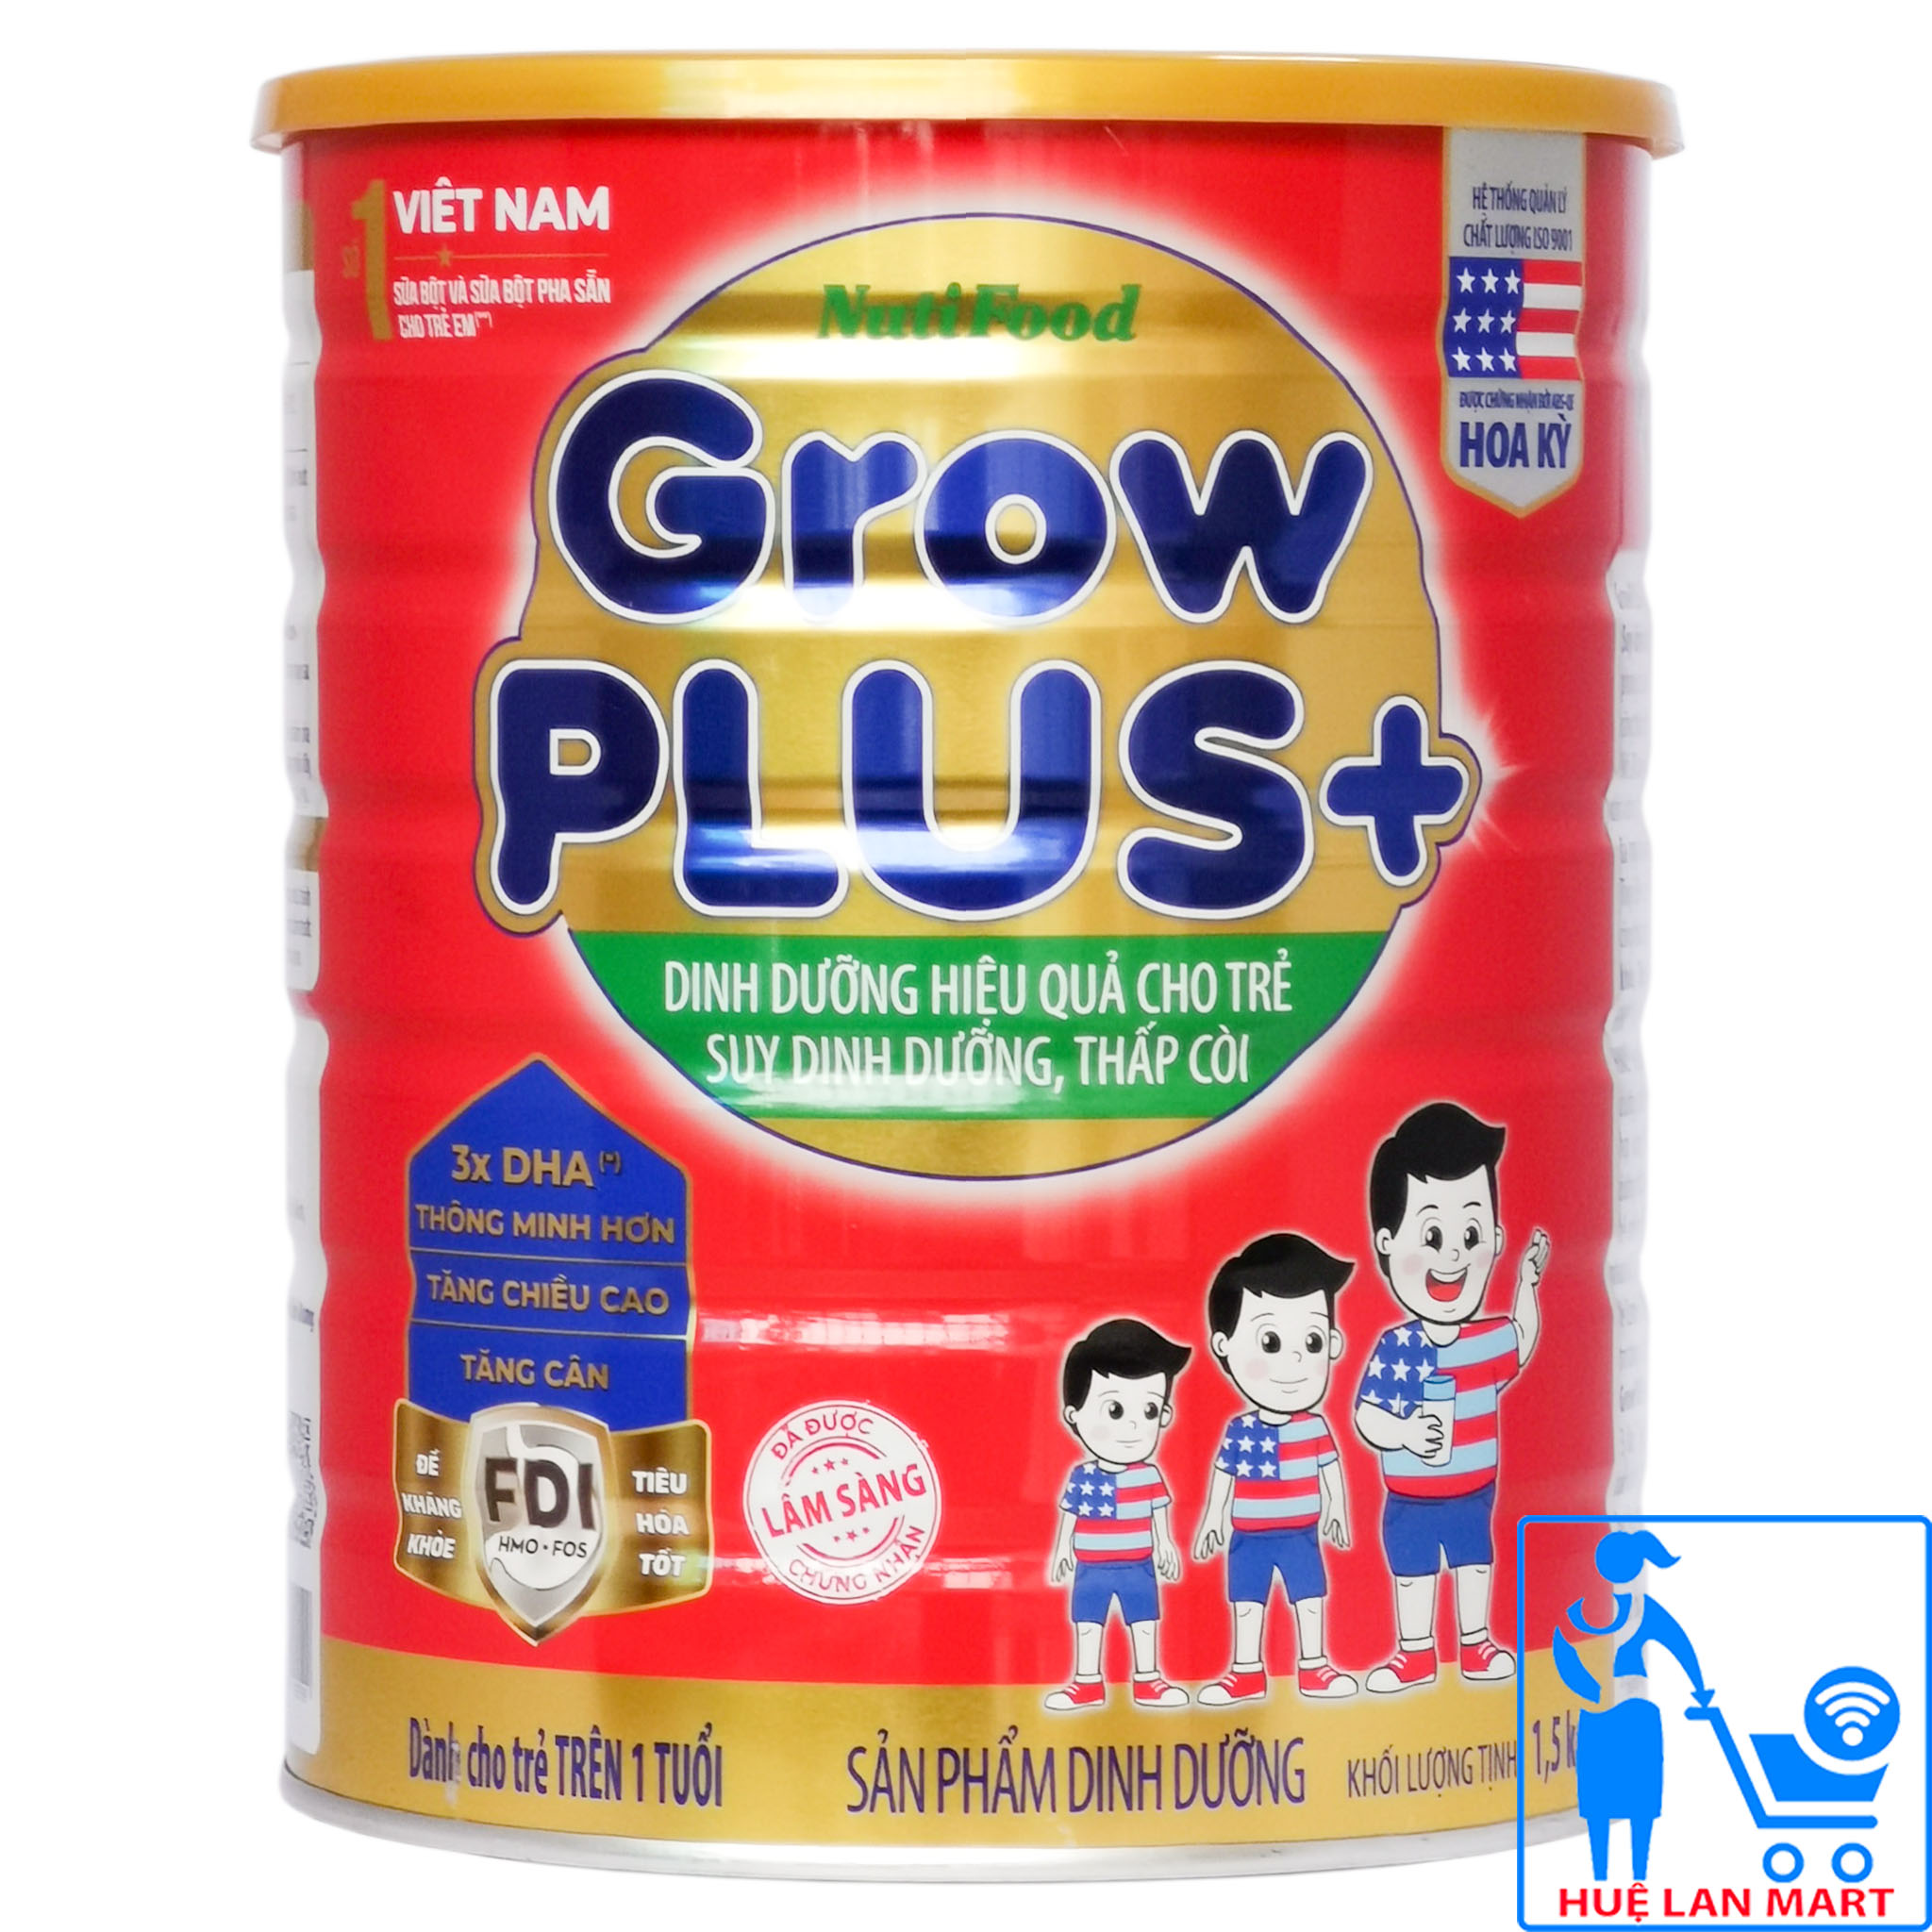 Sữa Bột Nutifood Grow Plus+ Đỏ Hộp 1,5kg (Dinh dưỡng hiệu quả cho trẻ suy dinh dưỡng, thấp còi từ 1~10 tuổi)